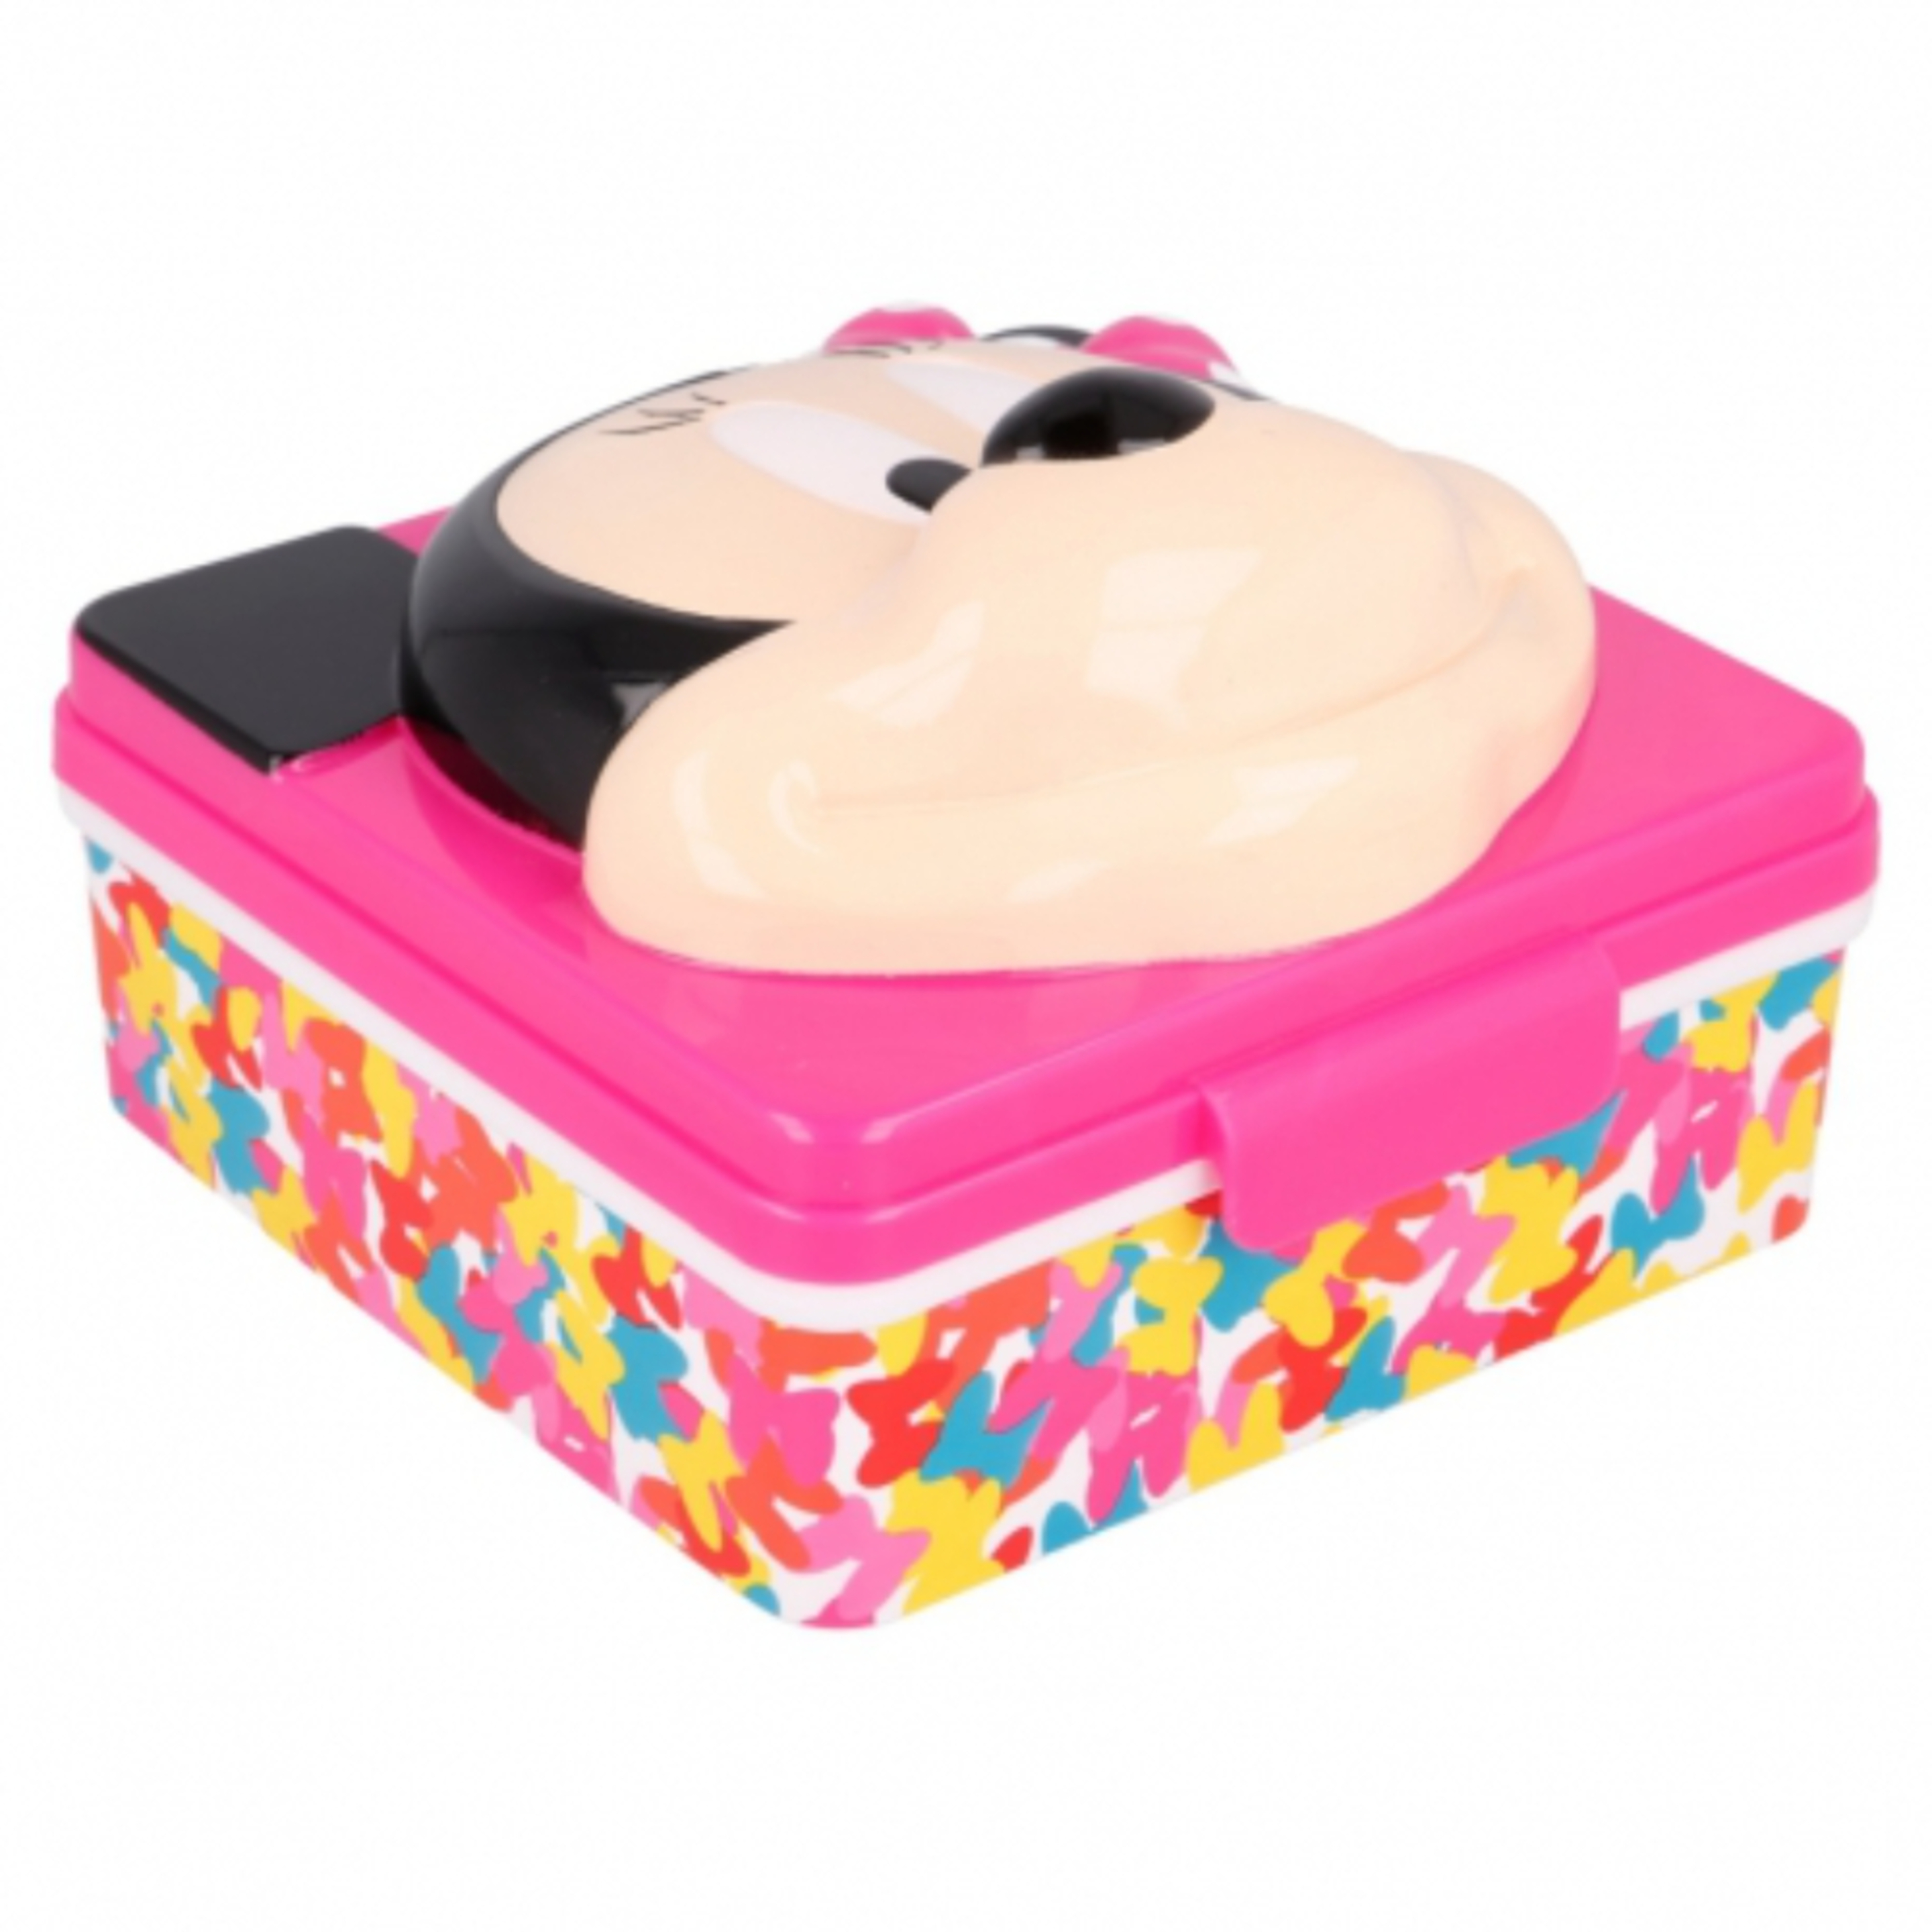 Caixa Lancheira Minnie Mouse 65688 - multicolor - 